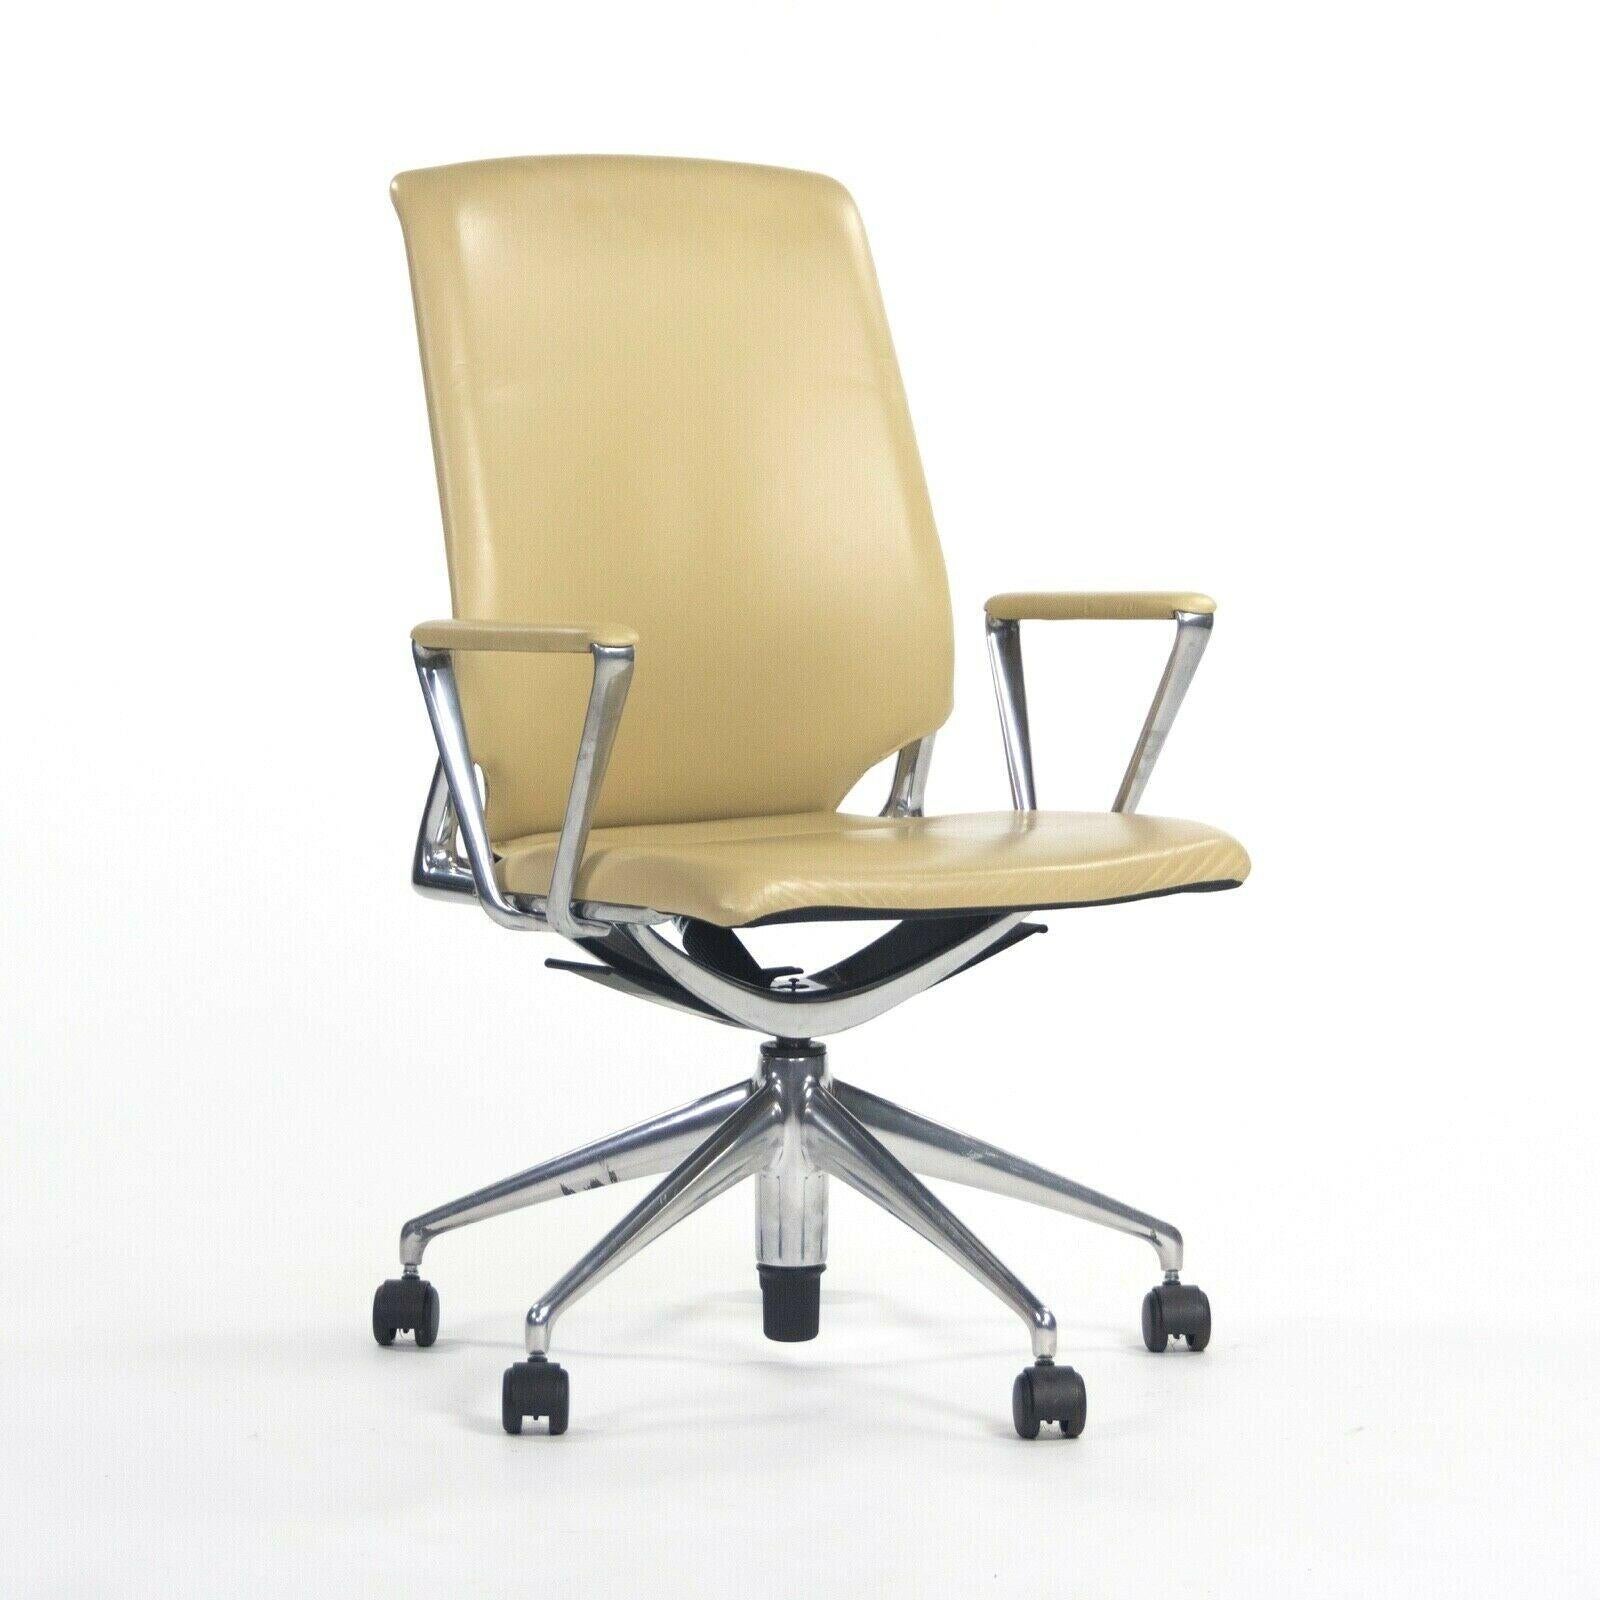 2011 Vitra Meda by Alberto Meda Desk Chair Tan Full Leather For Sale 2